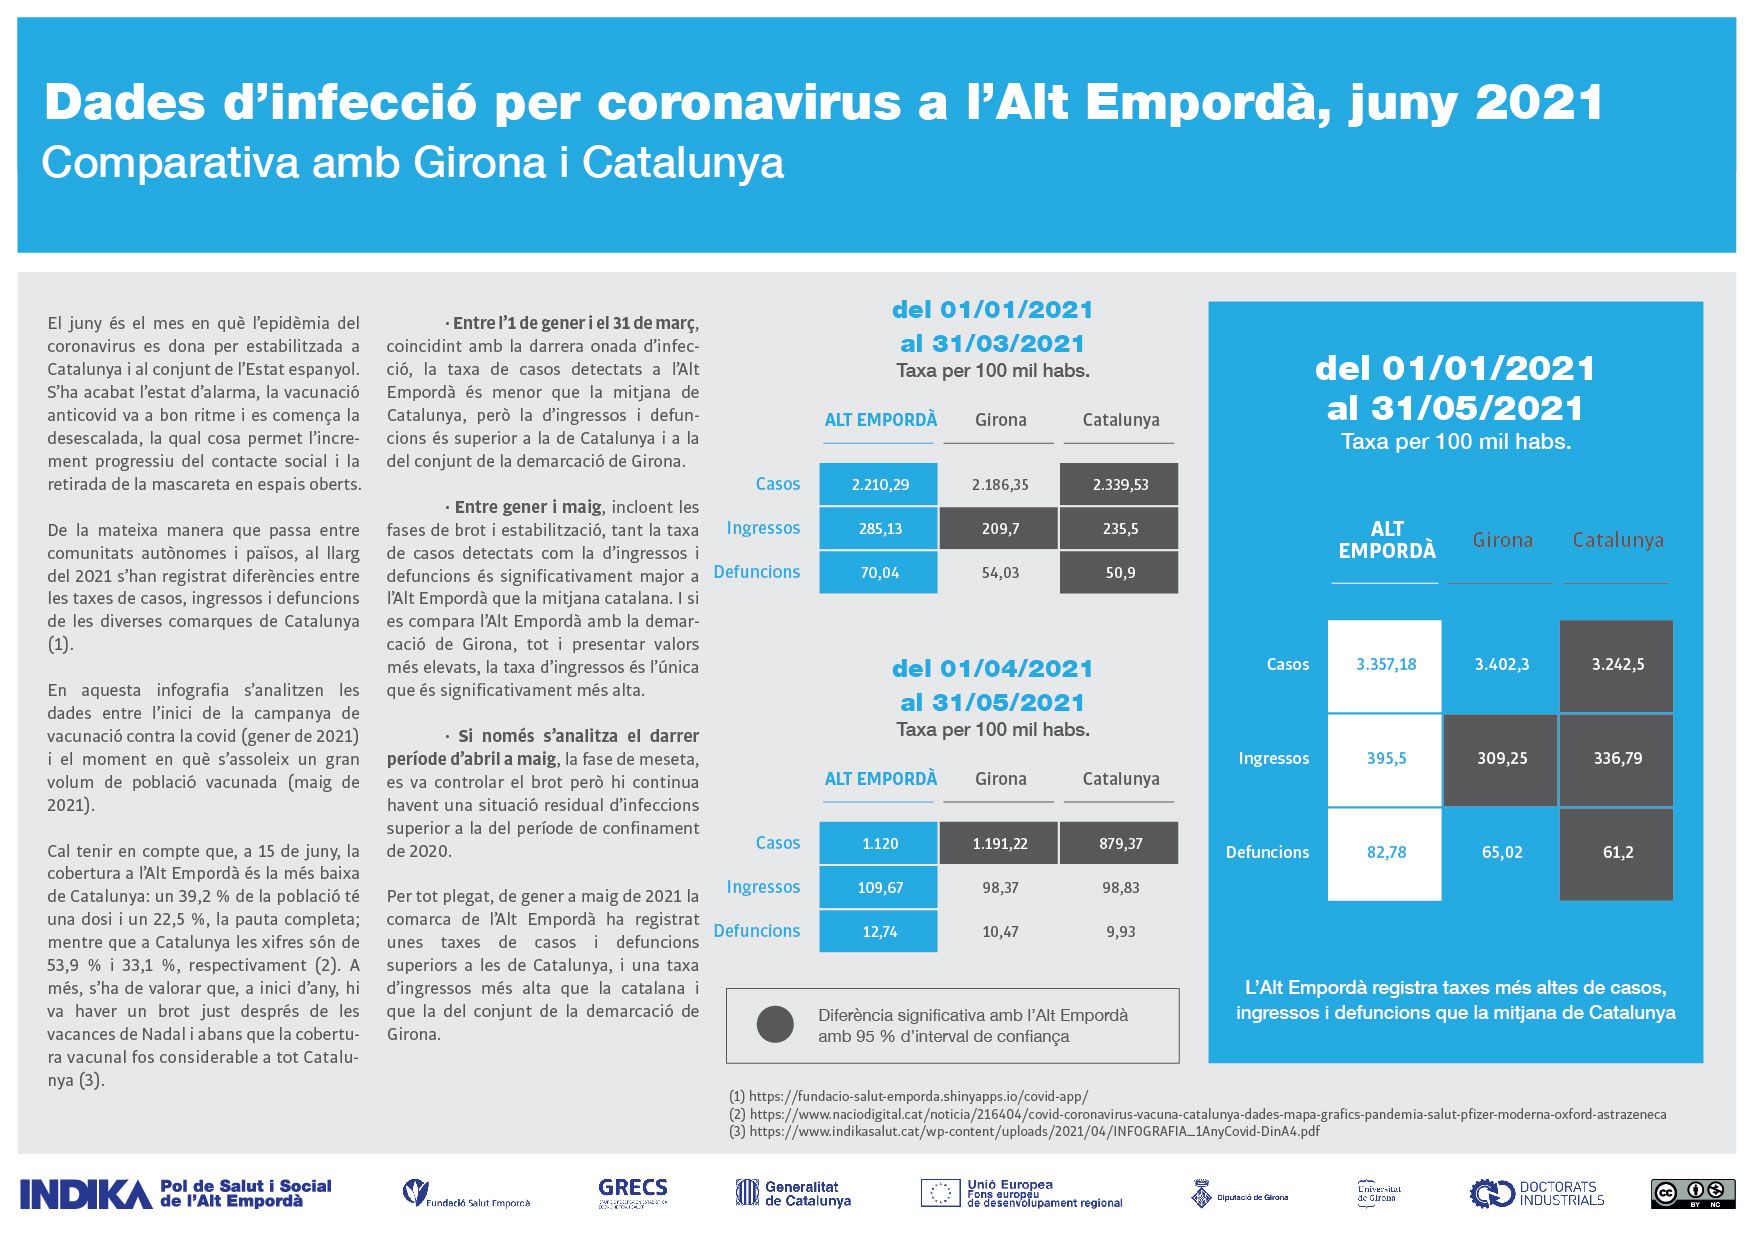 Infografia “Dades d’infecció per coronavirus a l’Alt Empordà, juny 2021. Comparativa amb Girona i Catalunya”